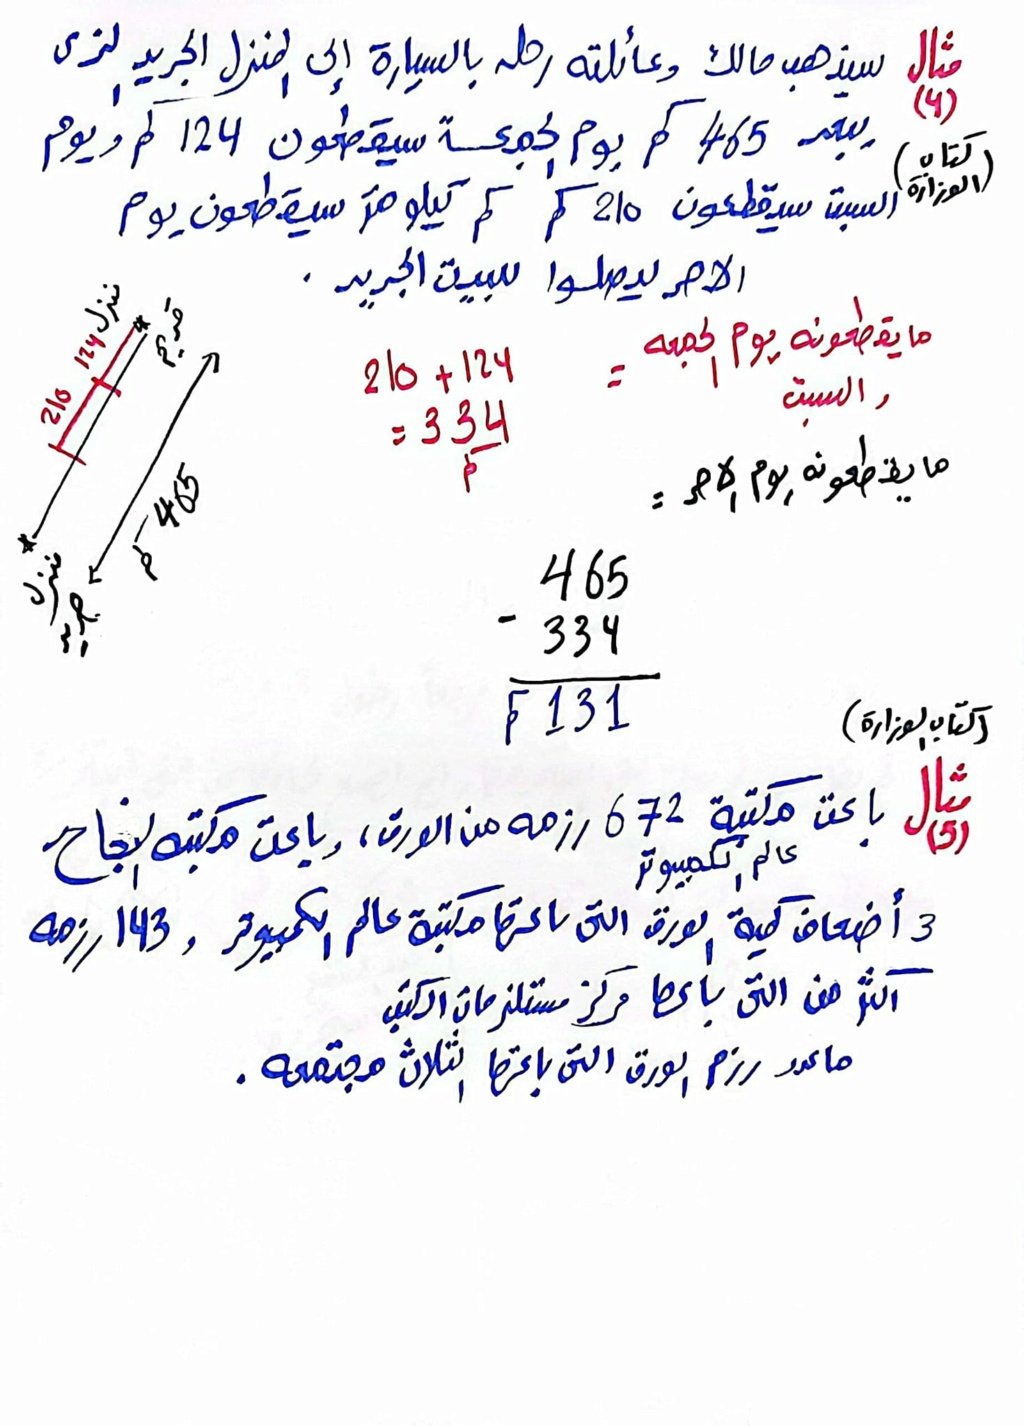  مسائل كلاميه متعدده الخطوات رياضيات خامسة ابتدائي مستر محمد ابراهيم 375